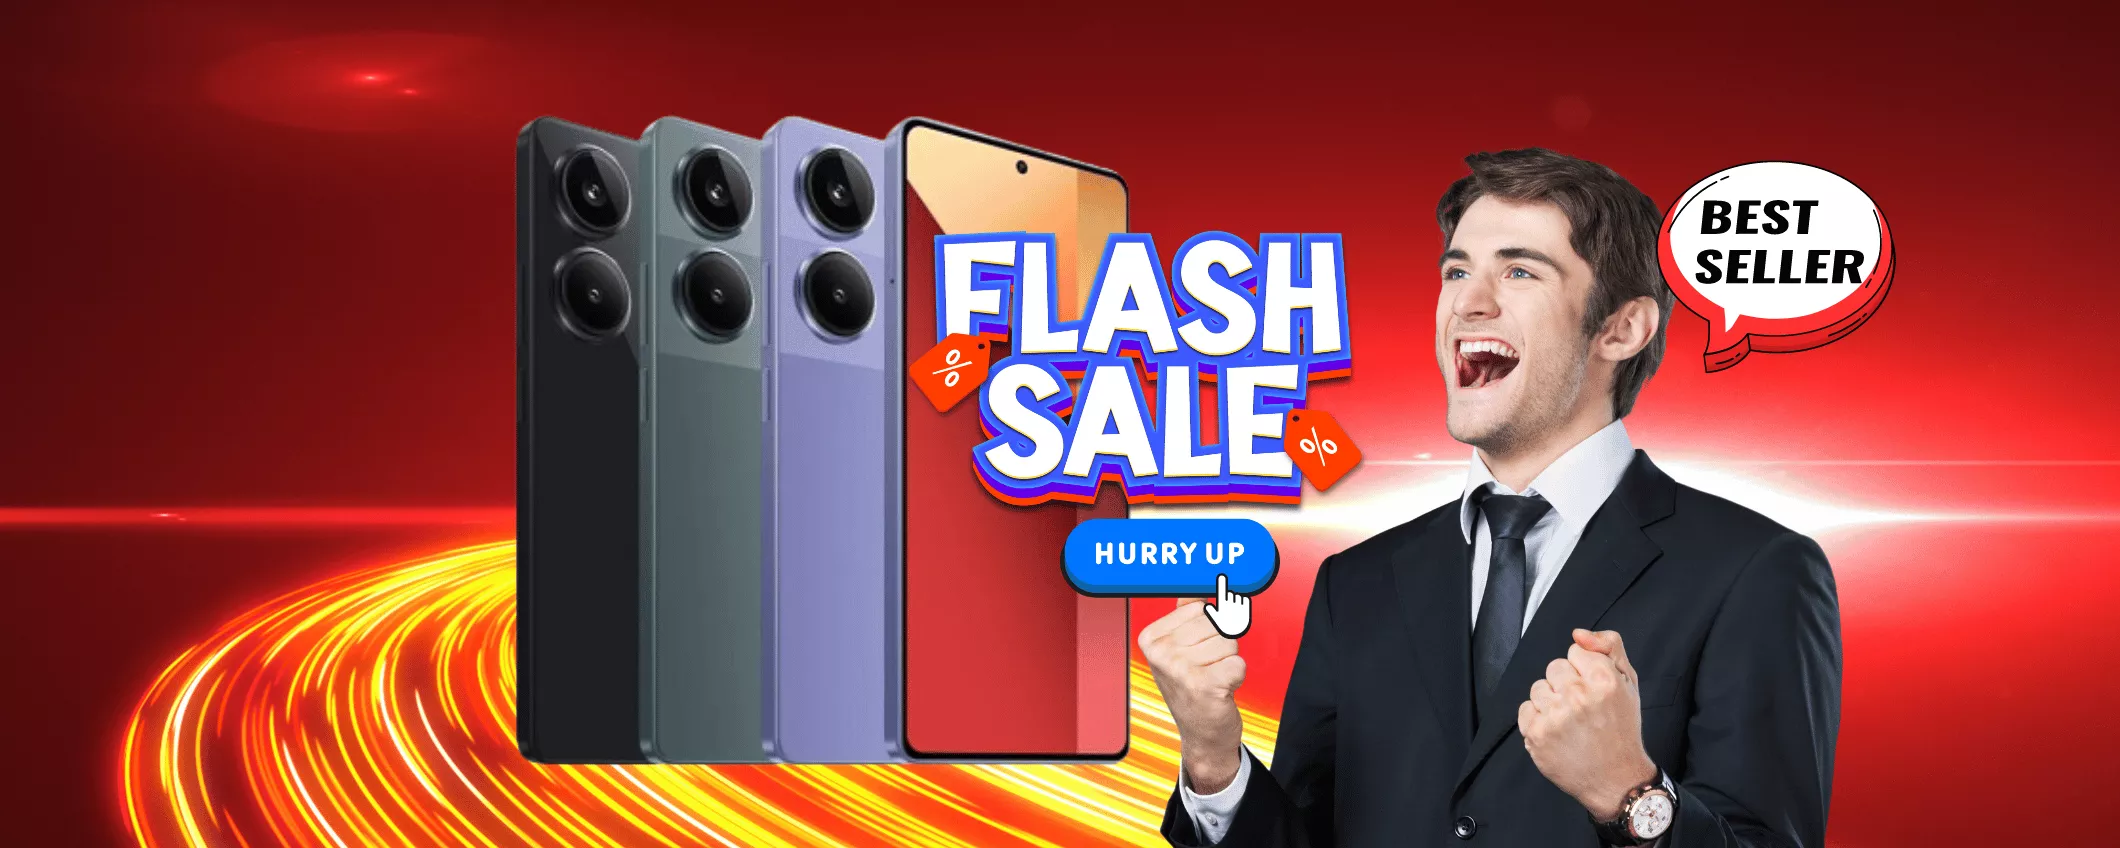 SVENDITA Xiaomi in corso su Ebay: costa NIENTE, non ci potrai credere